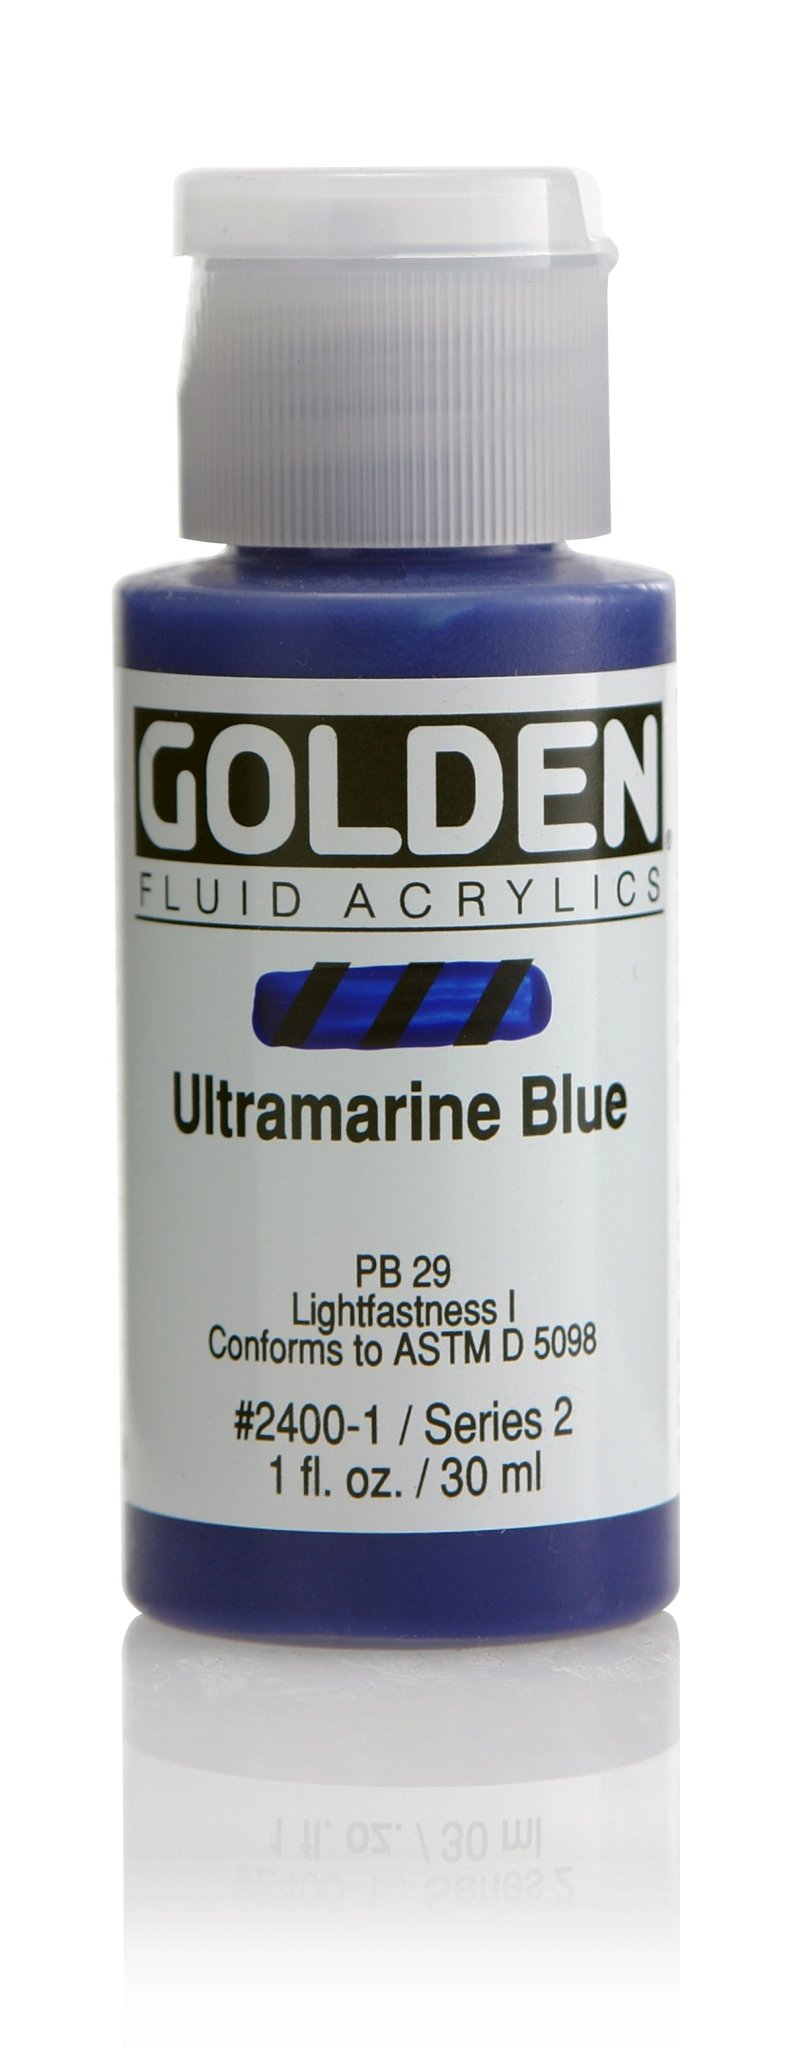 Golden Fluid Acrylics - Ultramarine Blue - 30ml - Create A Little Magic (Pty) Ltd